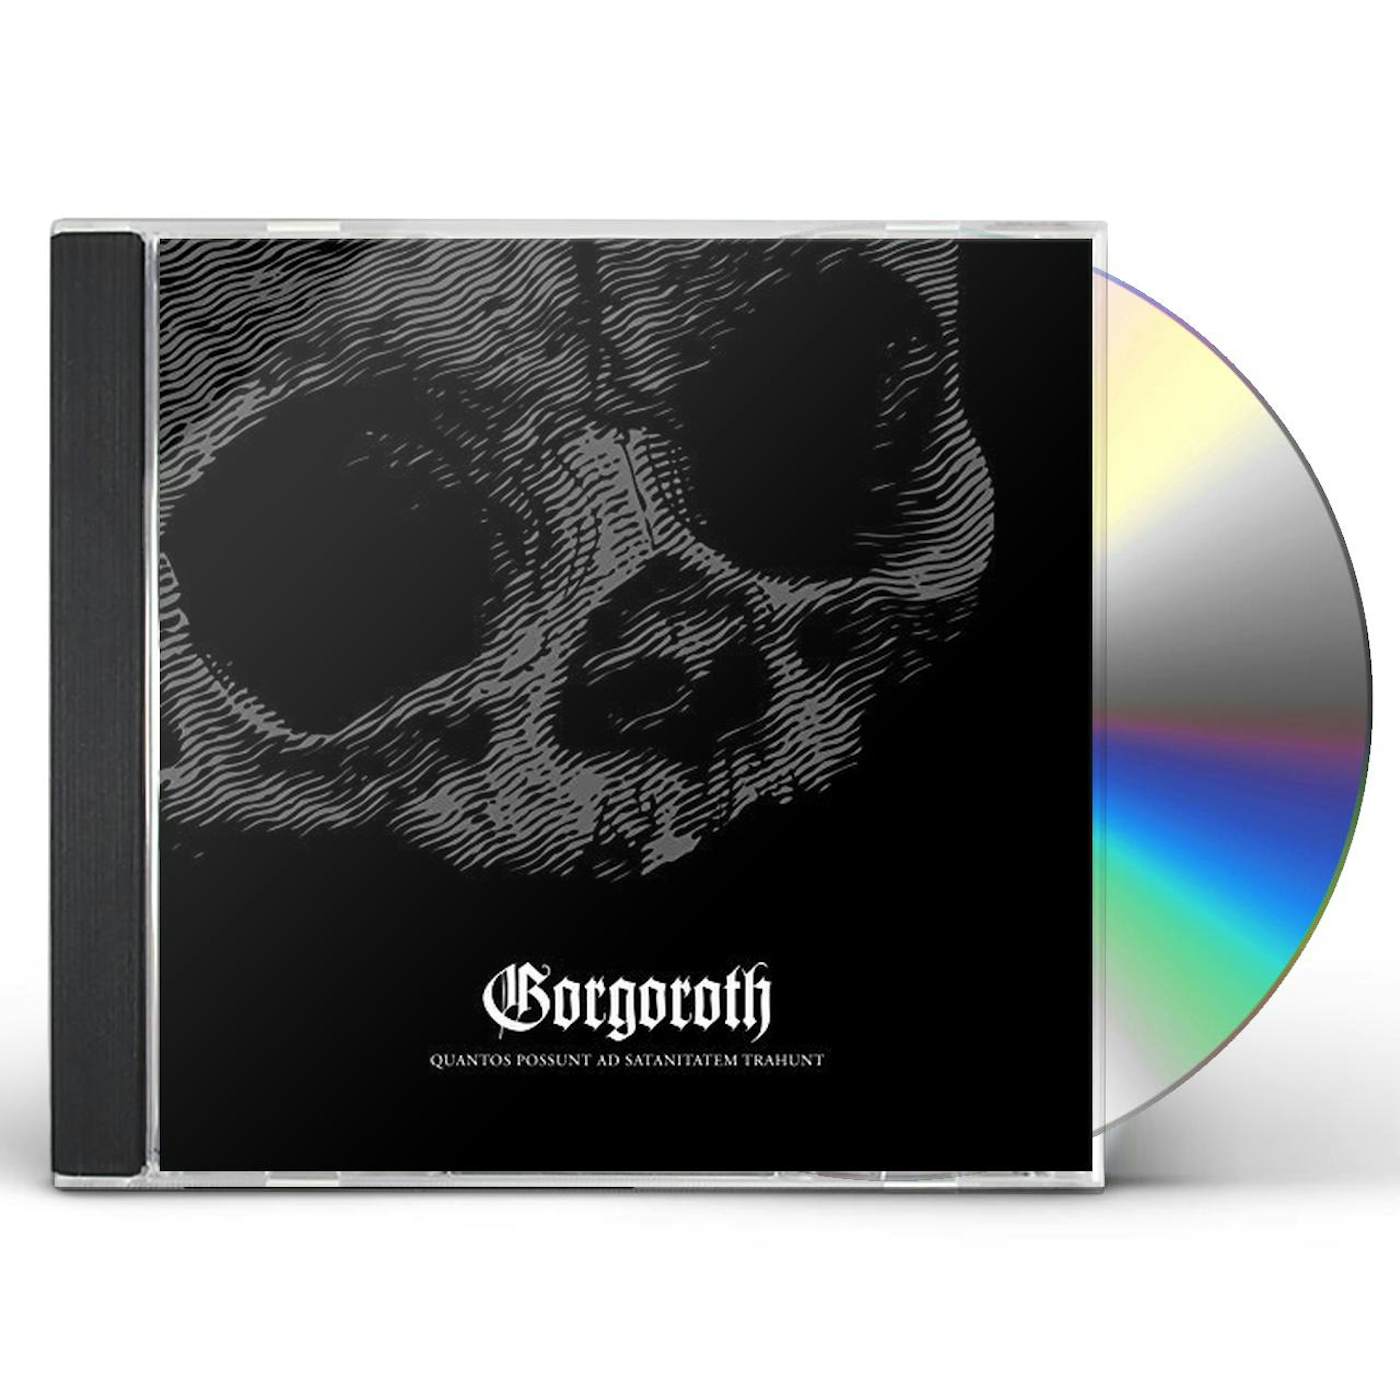 Gorgoroth QUANTOS POSSUNT AD SATANITATEM TRAHUNT CD